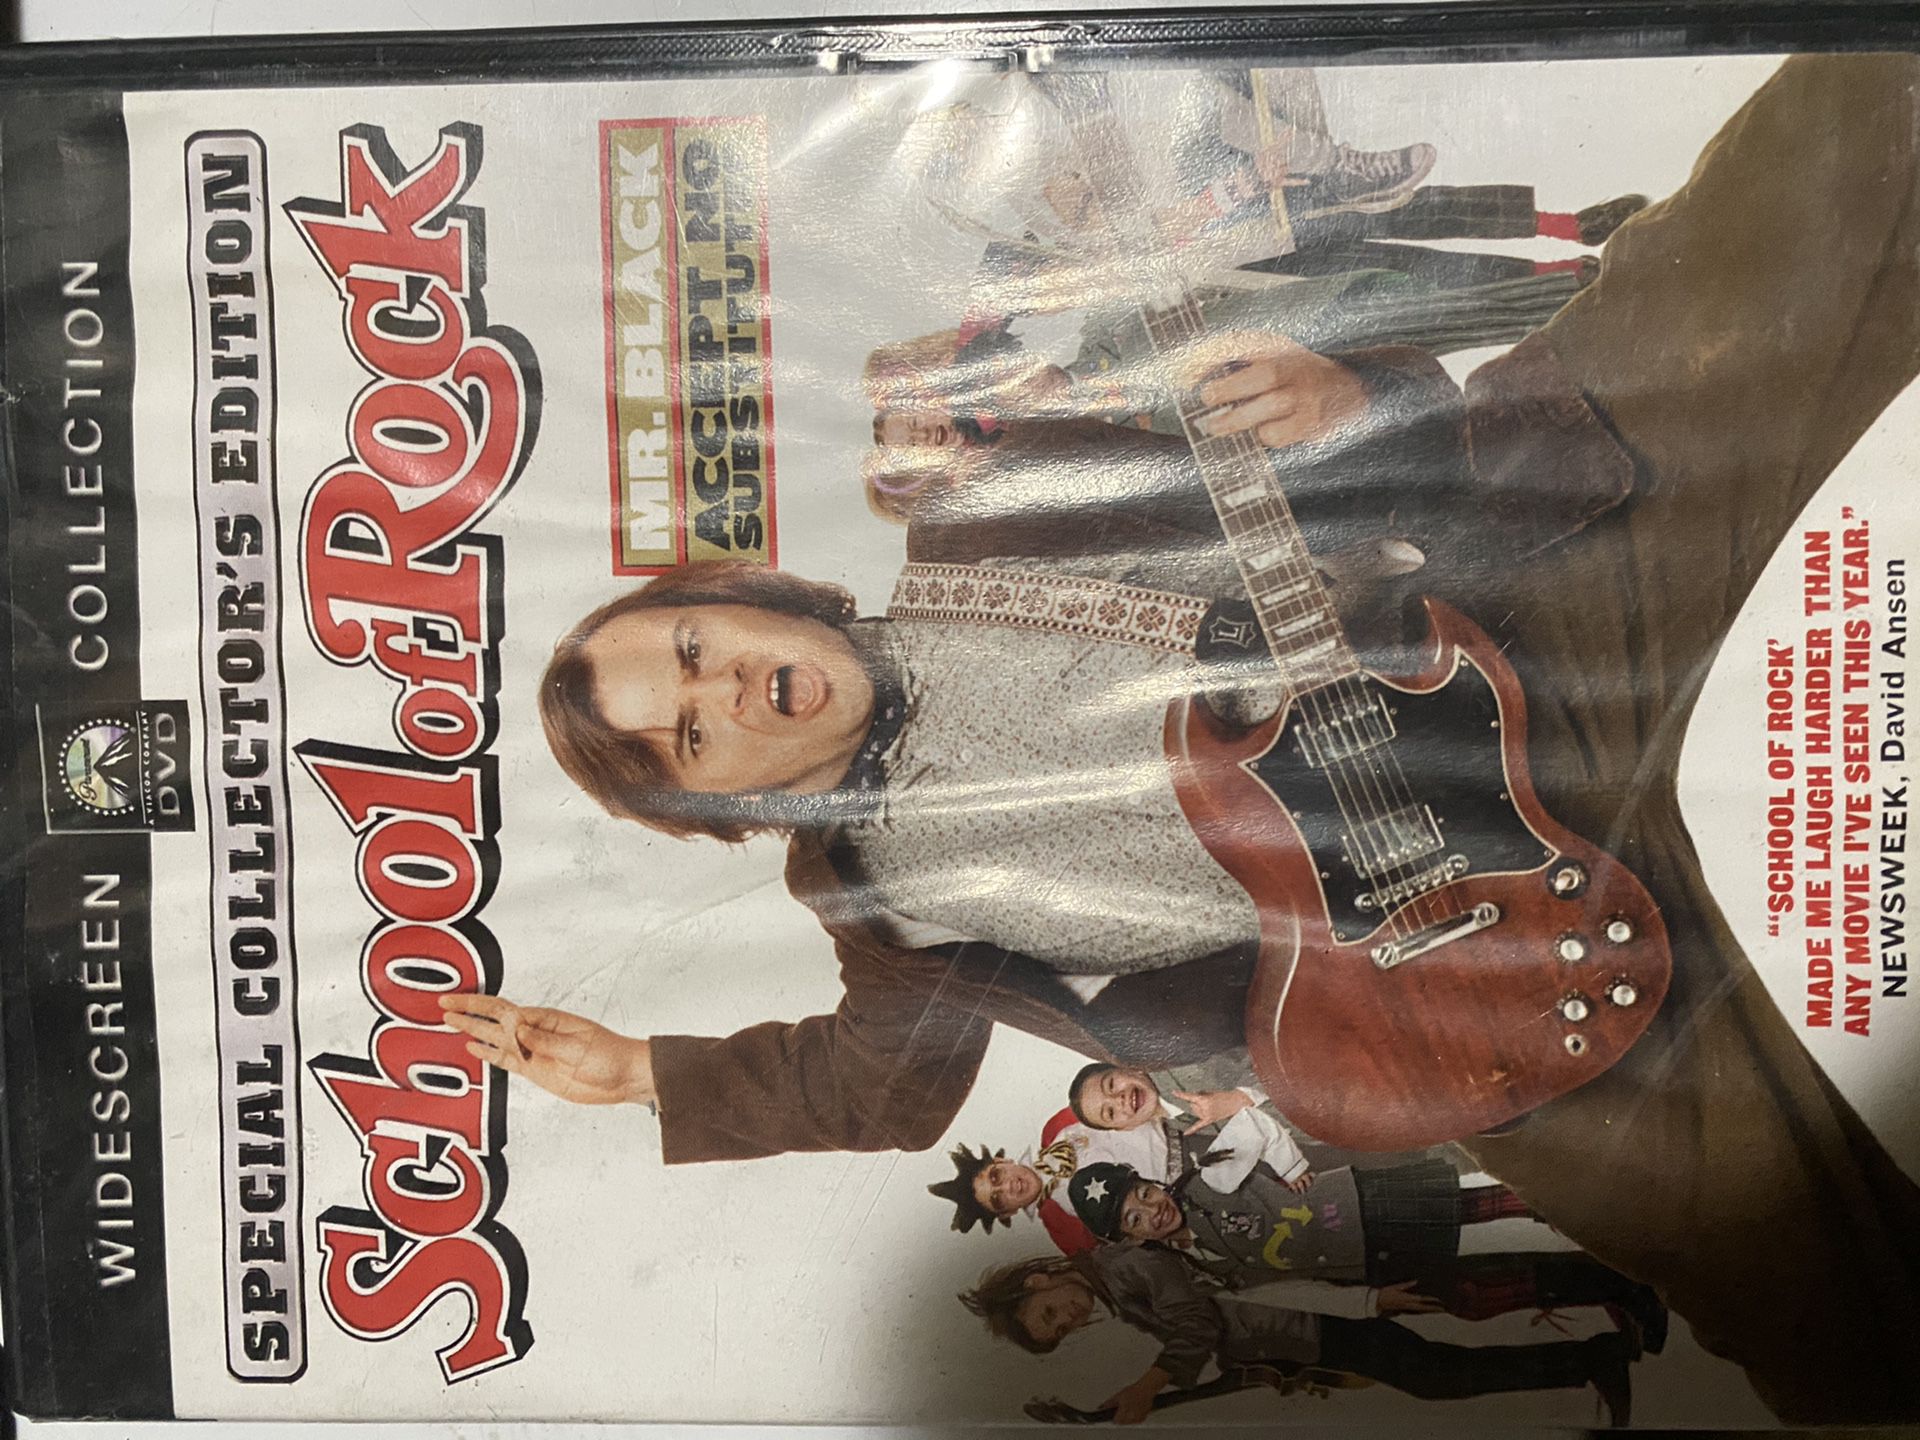 School of Rock - Jack Black DVD special collectors edition